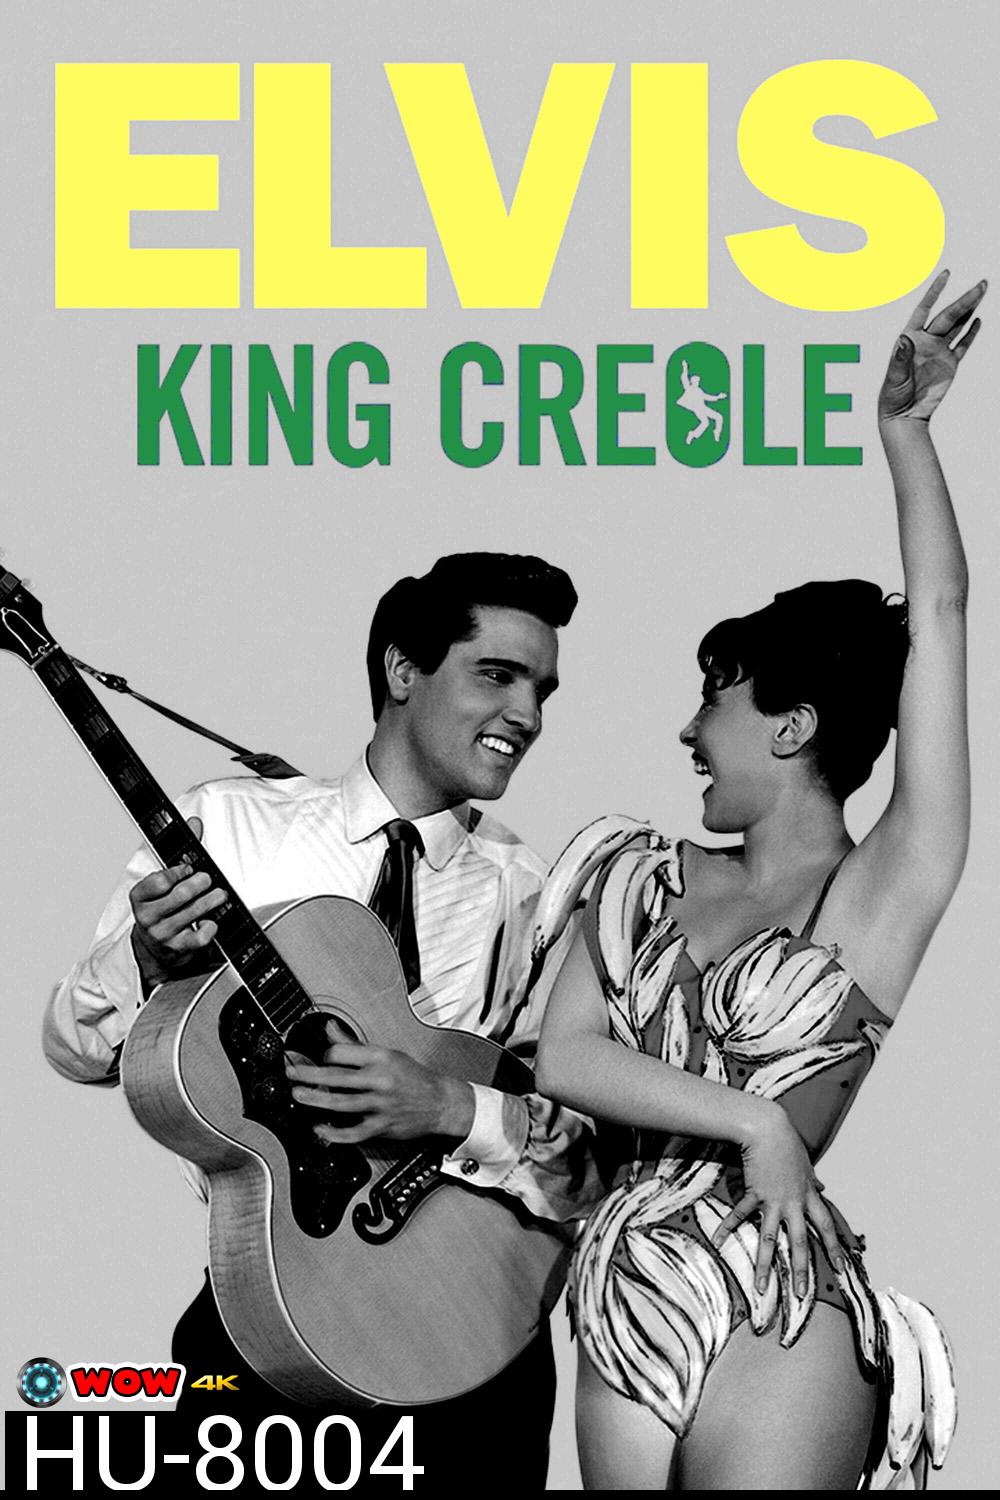 นักร้องนักเลง King Creole (1958) ภาพขาว-ดำ